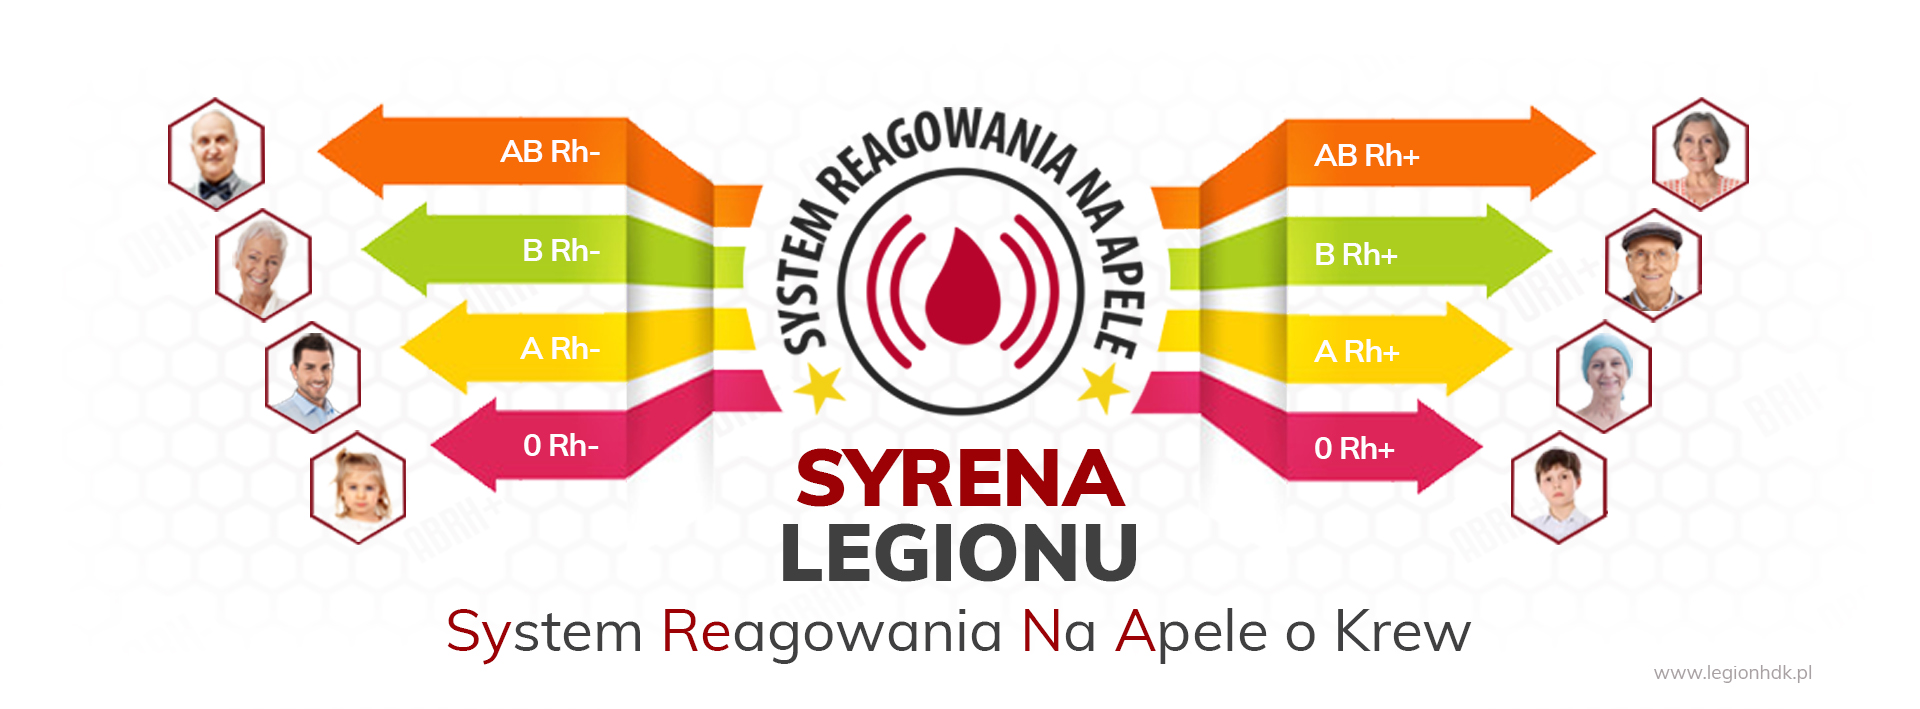 krew zycie pomoc syrena legionu system reagowania na apele o krew legion legionhdk